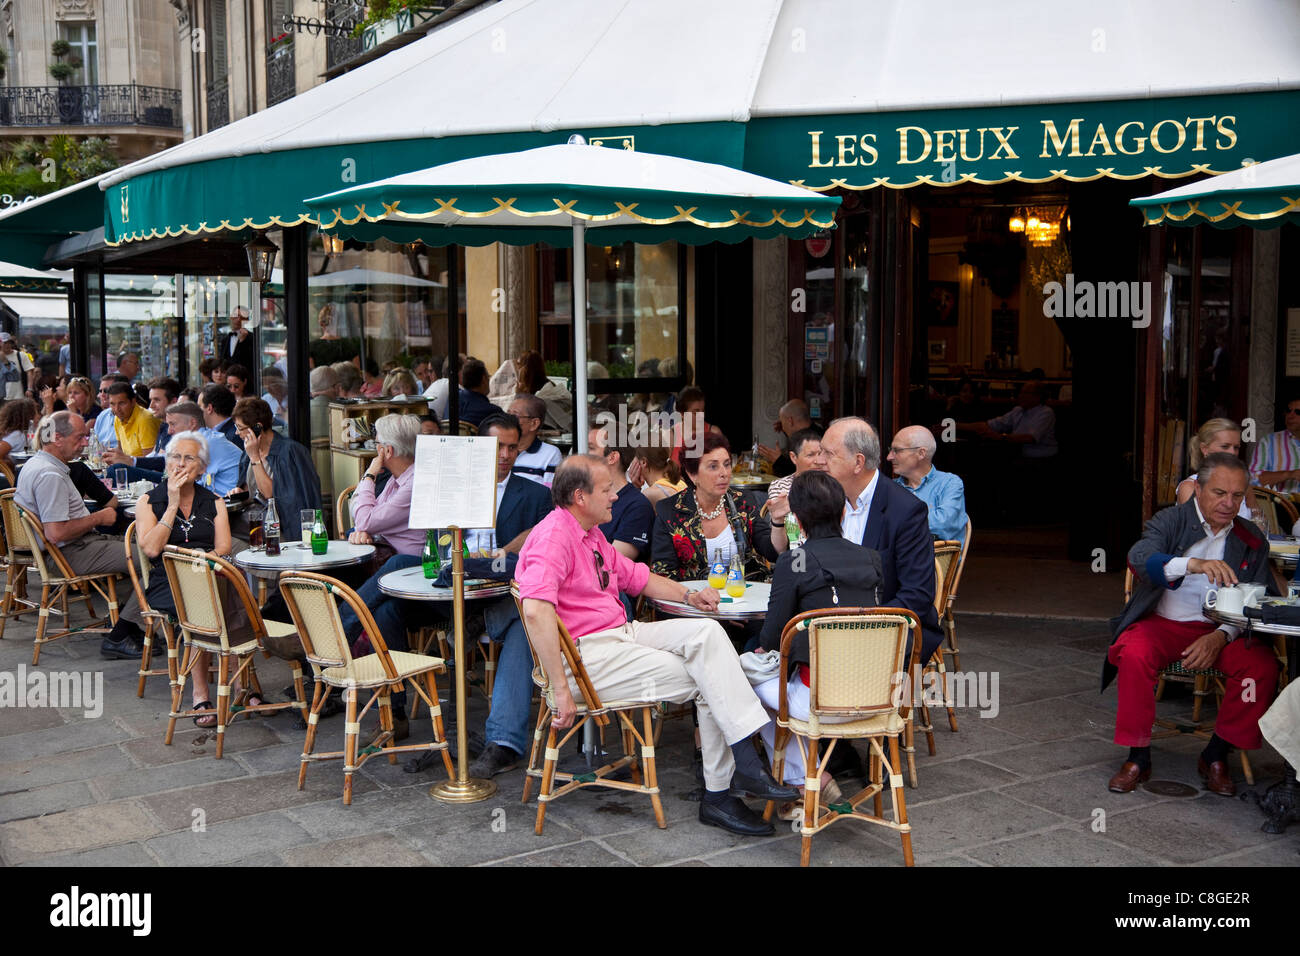 Les Deux Magots Cafe, Saint-Germain-des-Pres, Left Bank, Paris, France Stock Photo